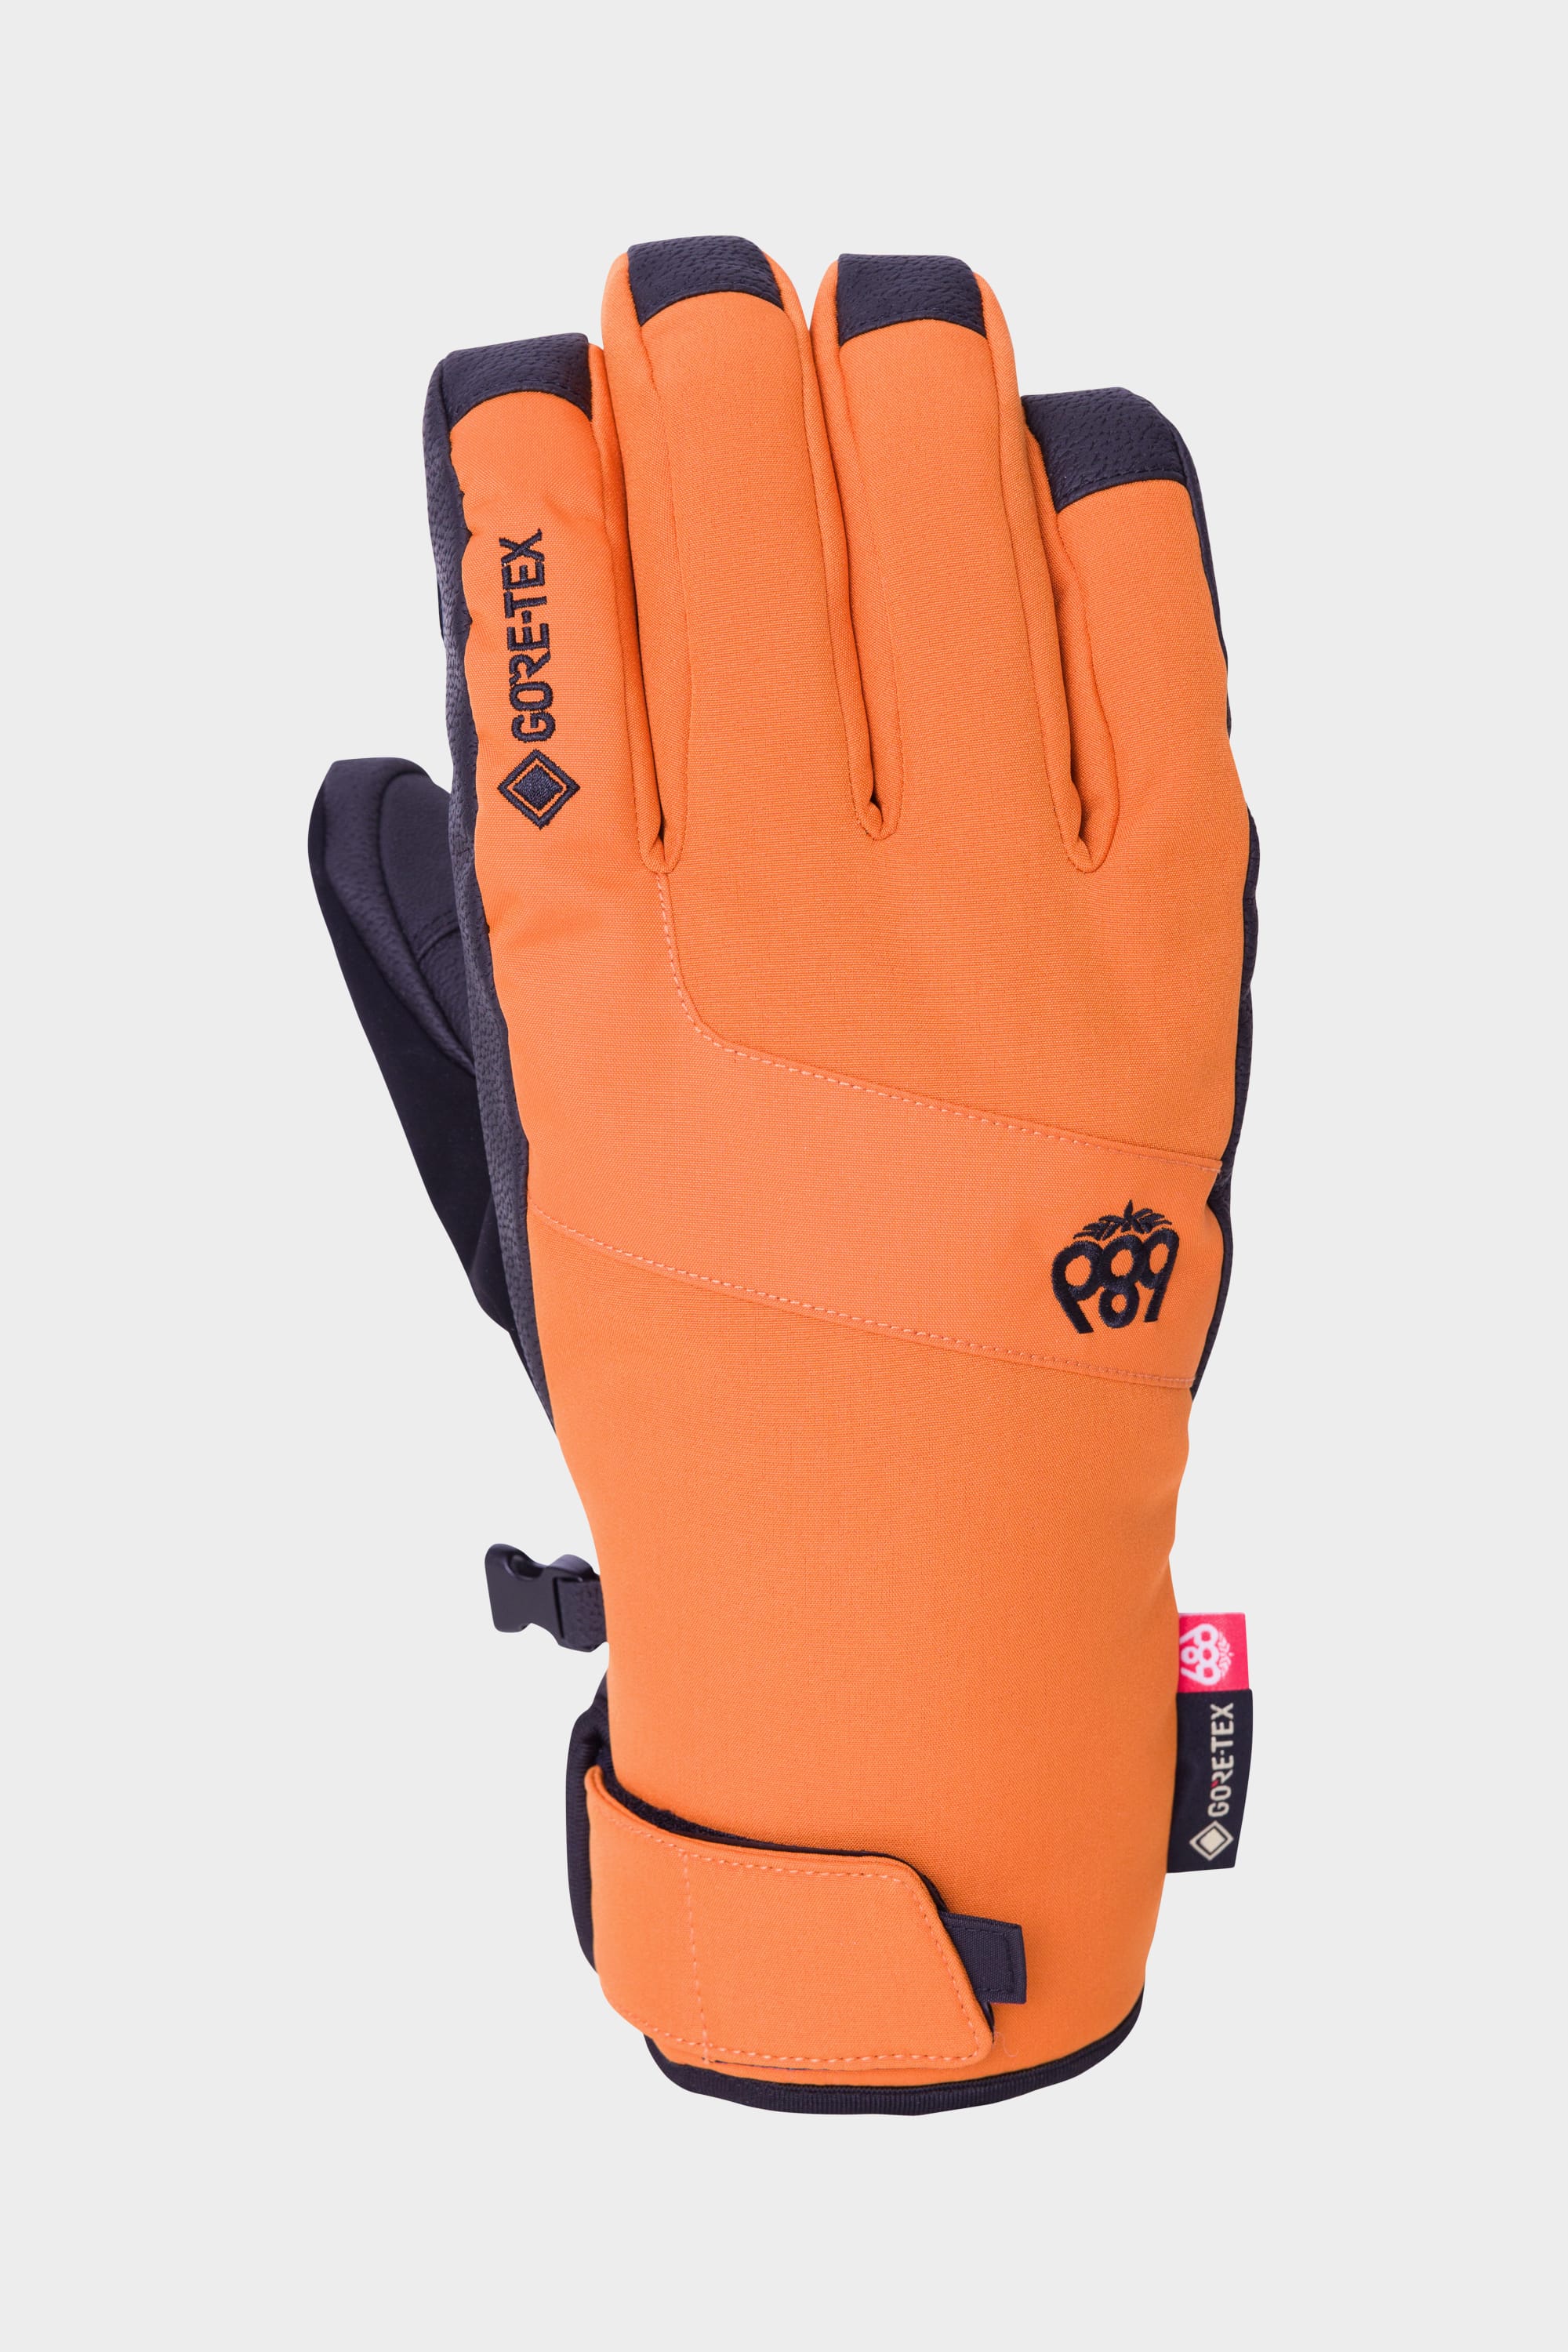 686 Men's GORE-TEX Linear Under Cuff Glove Copper Orange / L